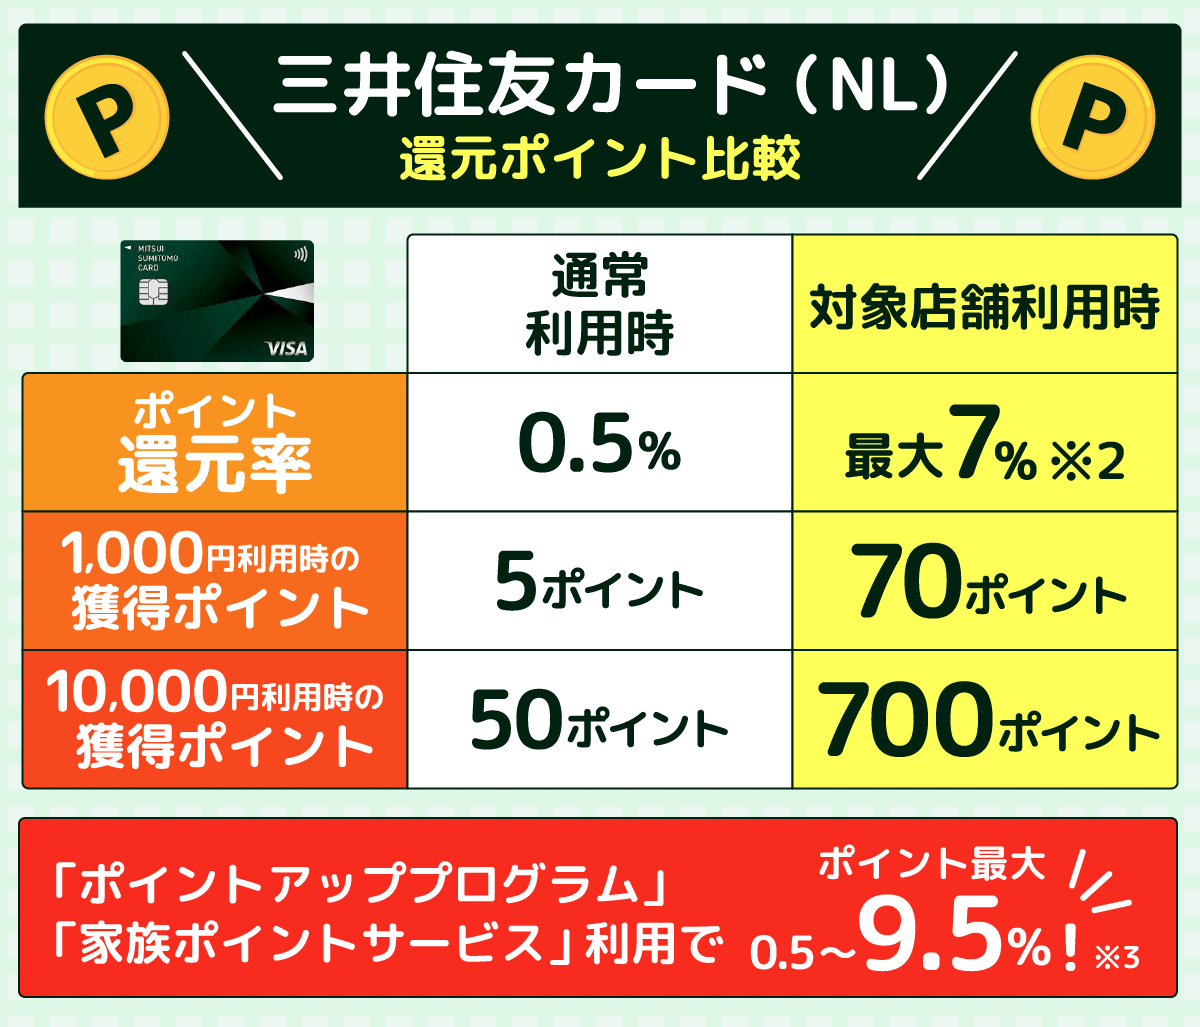 三井住友カードNLの還元ポイントを比較した表